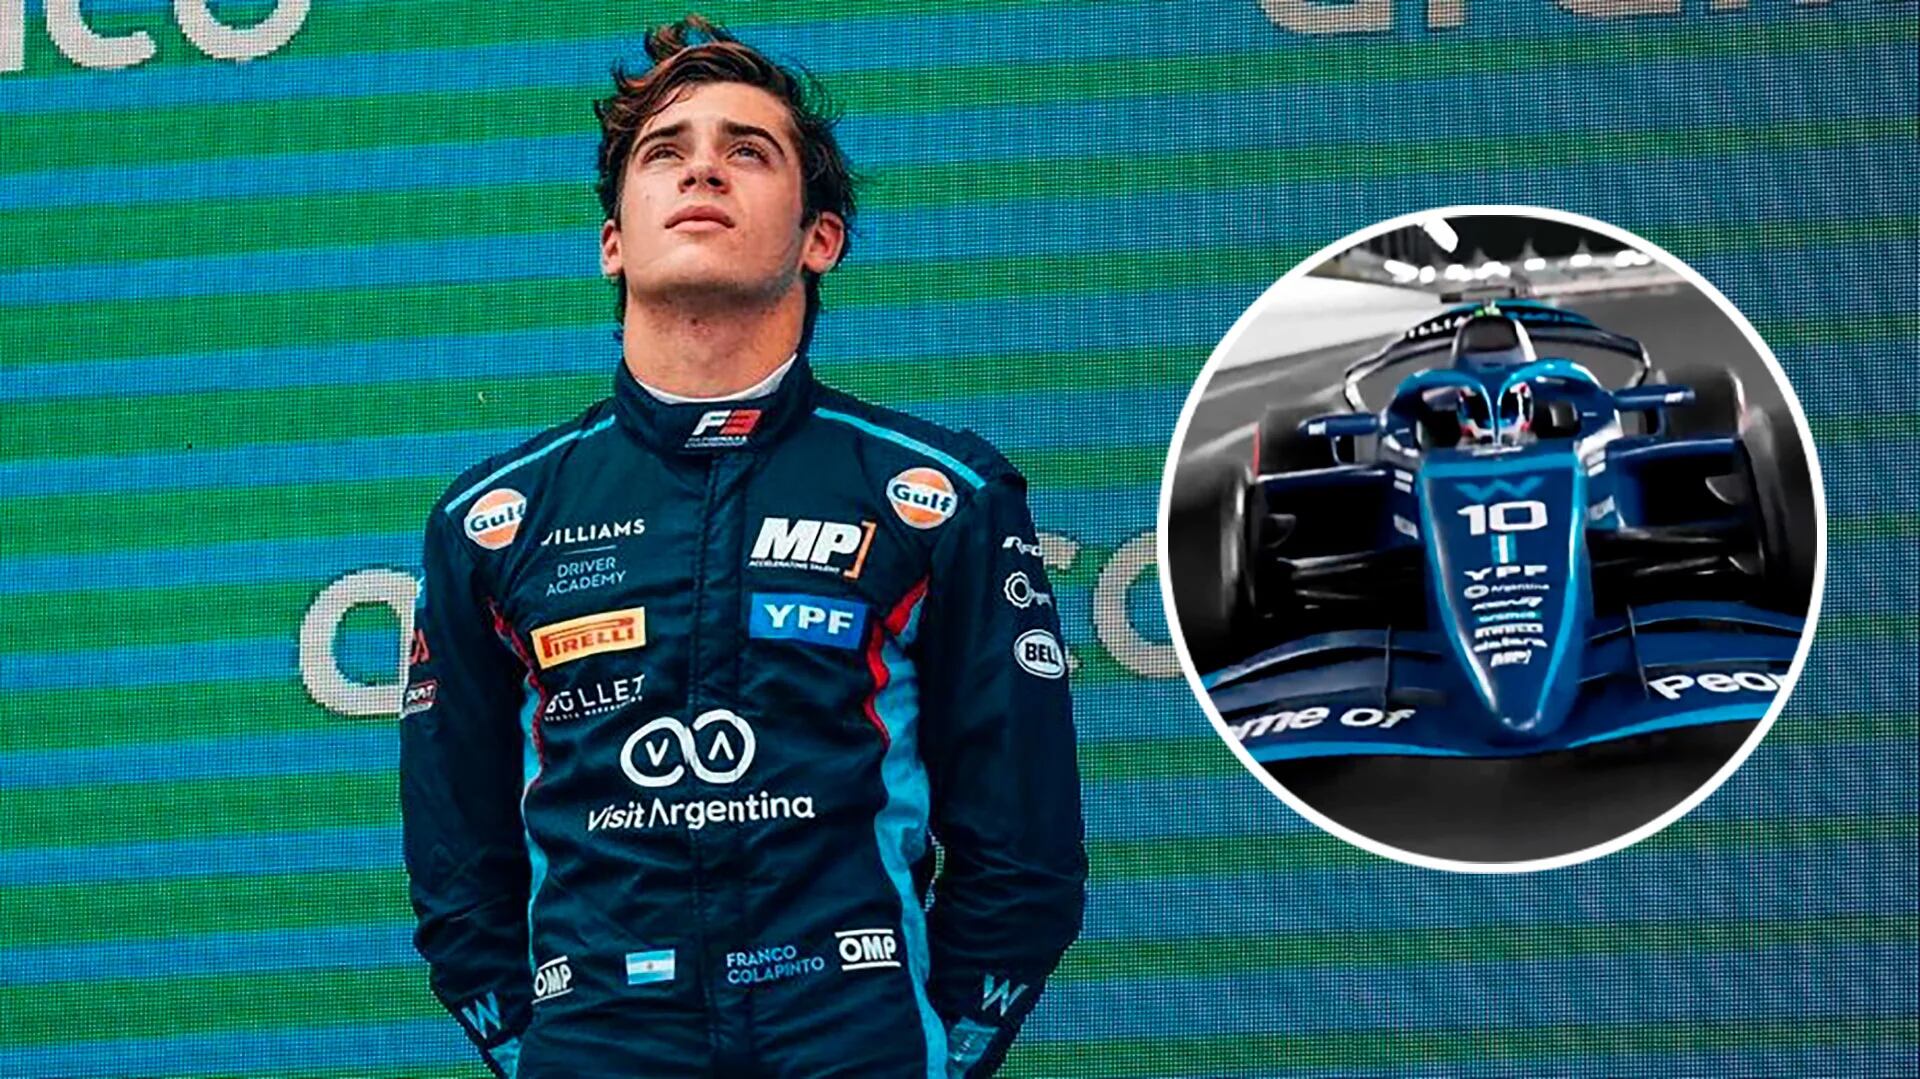 Exclusivo: Franco Colapinto está cada vez más cerca de la Fórmula 1 y haría un importante anuncio